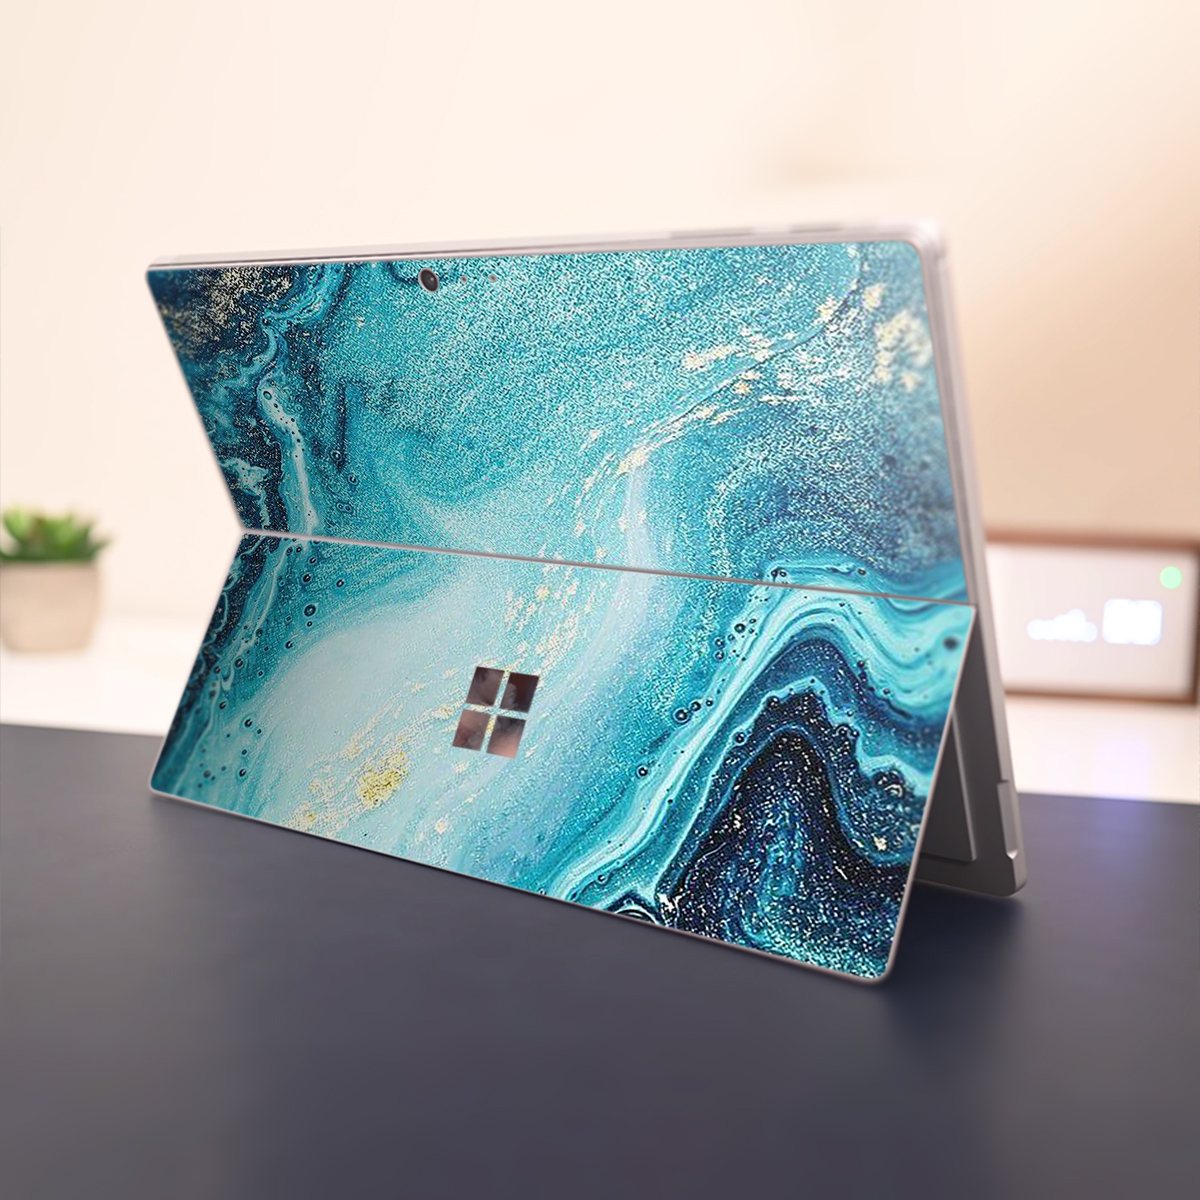 Skin dán hình vân đá cho Surface Go, Pro 2, Pro 3, Pro 4, Pro 5, Pro 6, Pro 7, Pro X